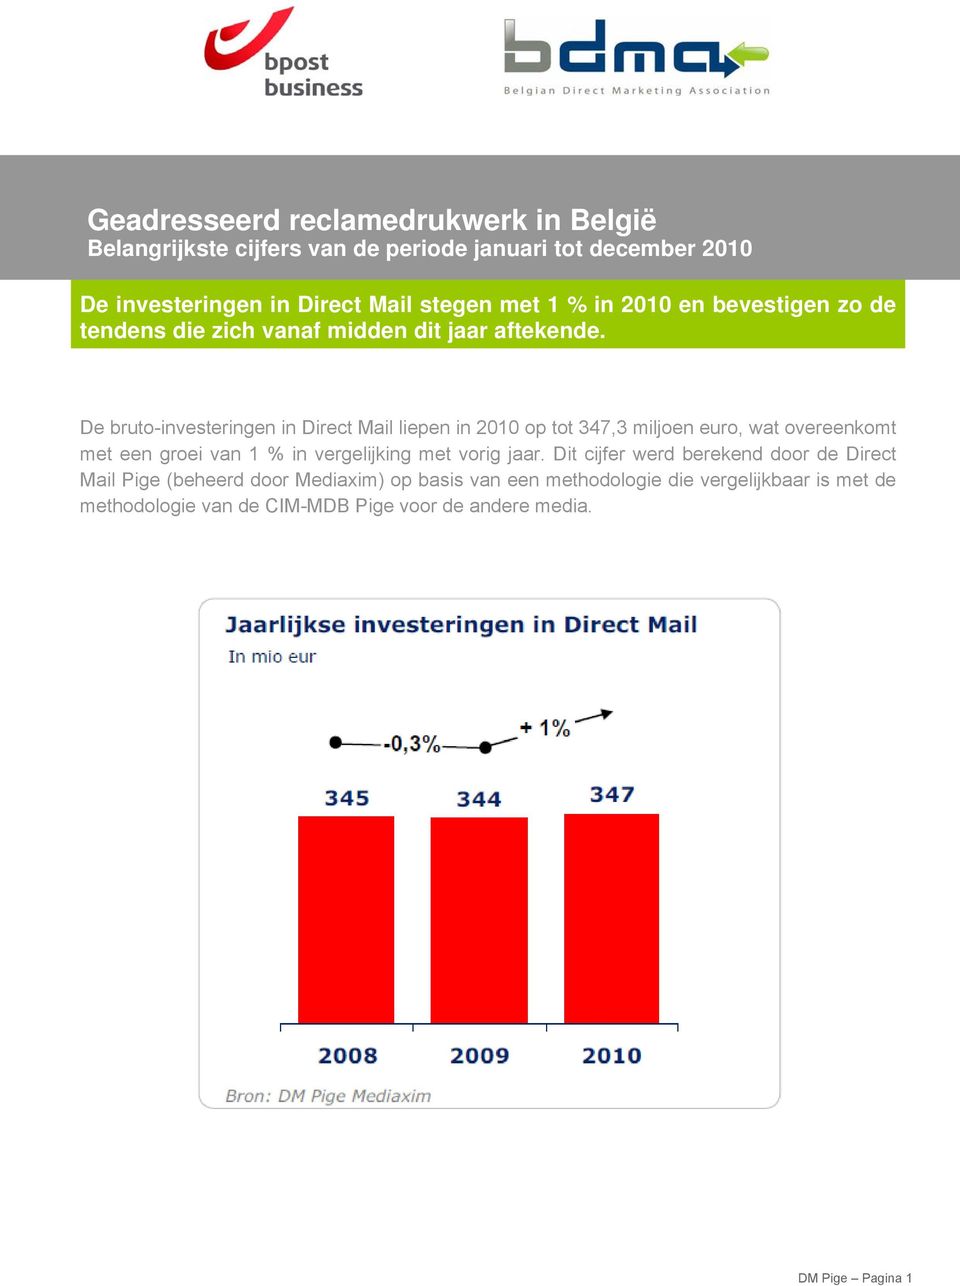 De bruto-investeringen in Direct Mail liepen in 2010 op tot 347,3 miljoen euro, wat overeenkomt met een groei van 1 % in vergelijking met vorig